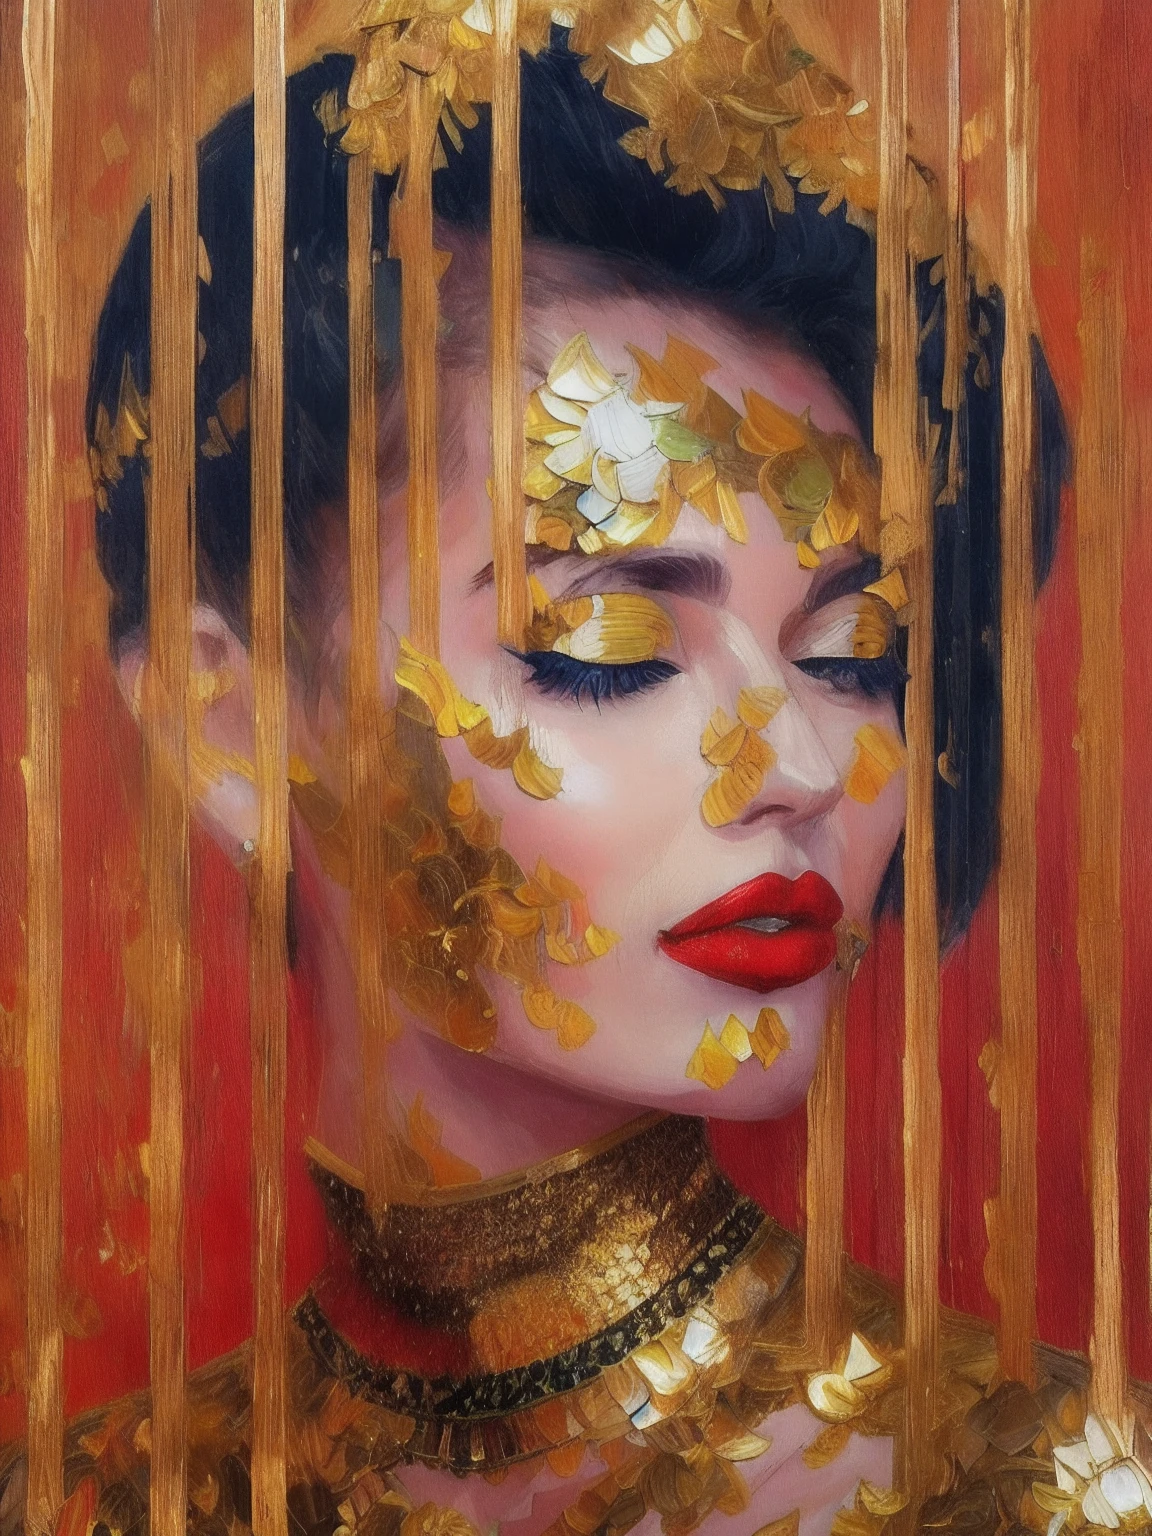 (肖像画: 1), 1名女性, 迷人的红唇, (完美的下巴) 穿着金色闪亮的裙子, 龙鳞, 黄金首饰项链, 黑色长发垂落, 自信的姿态和优雅的姿势凸显美丽, 详细的, 油画, 杰作